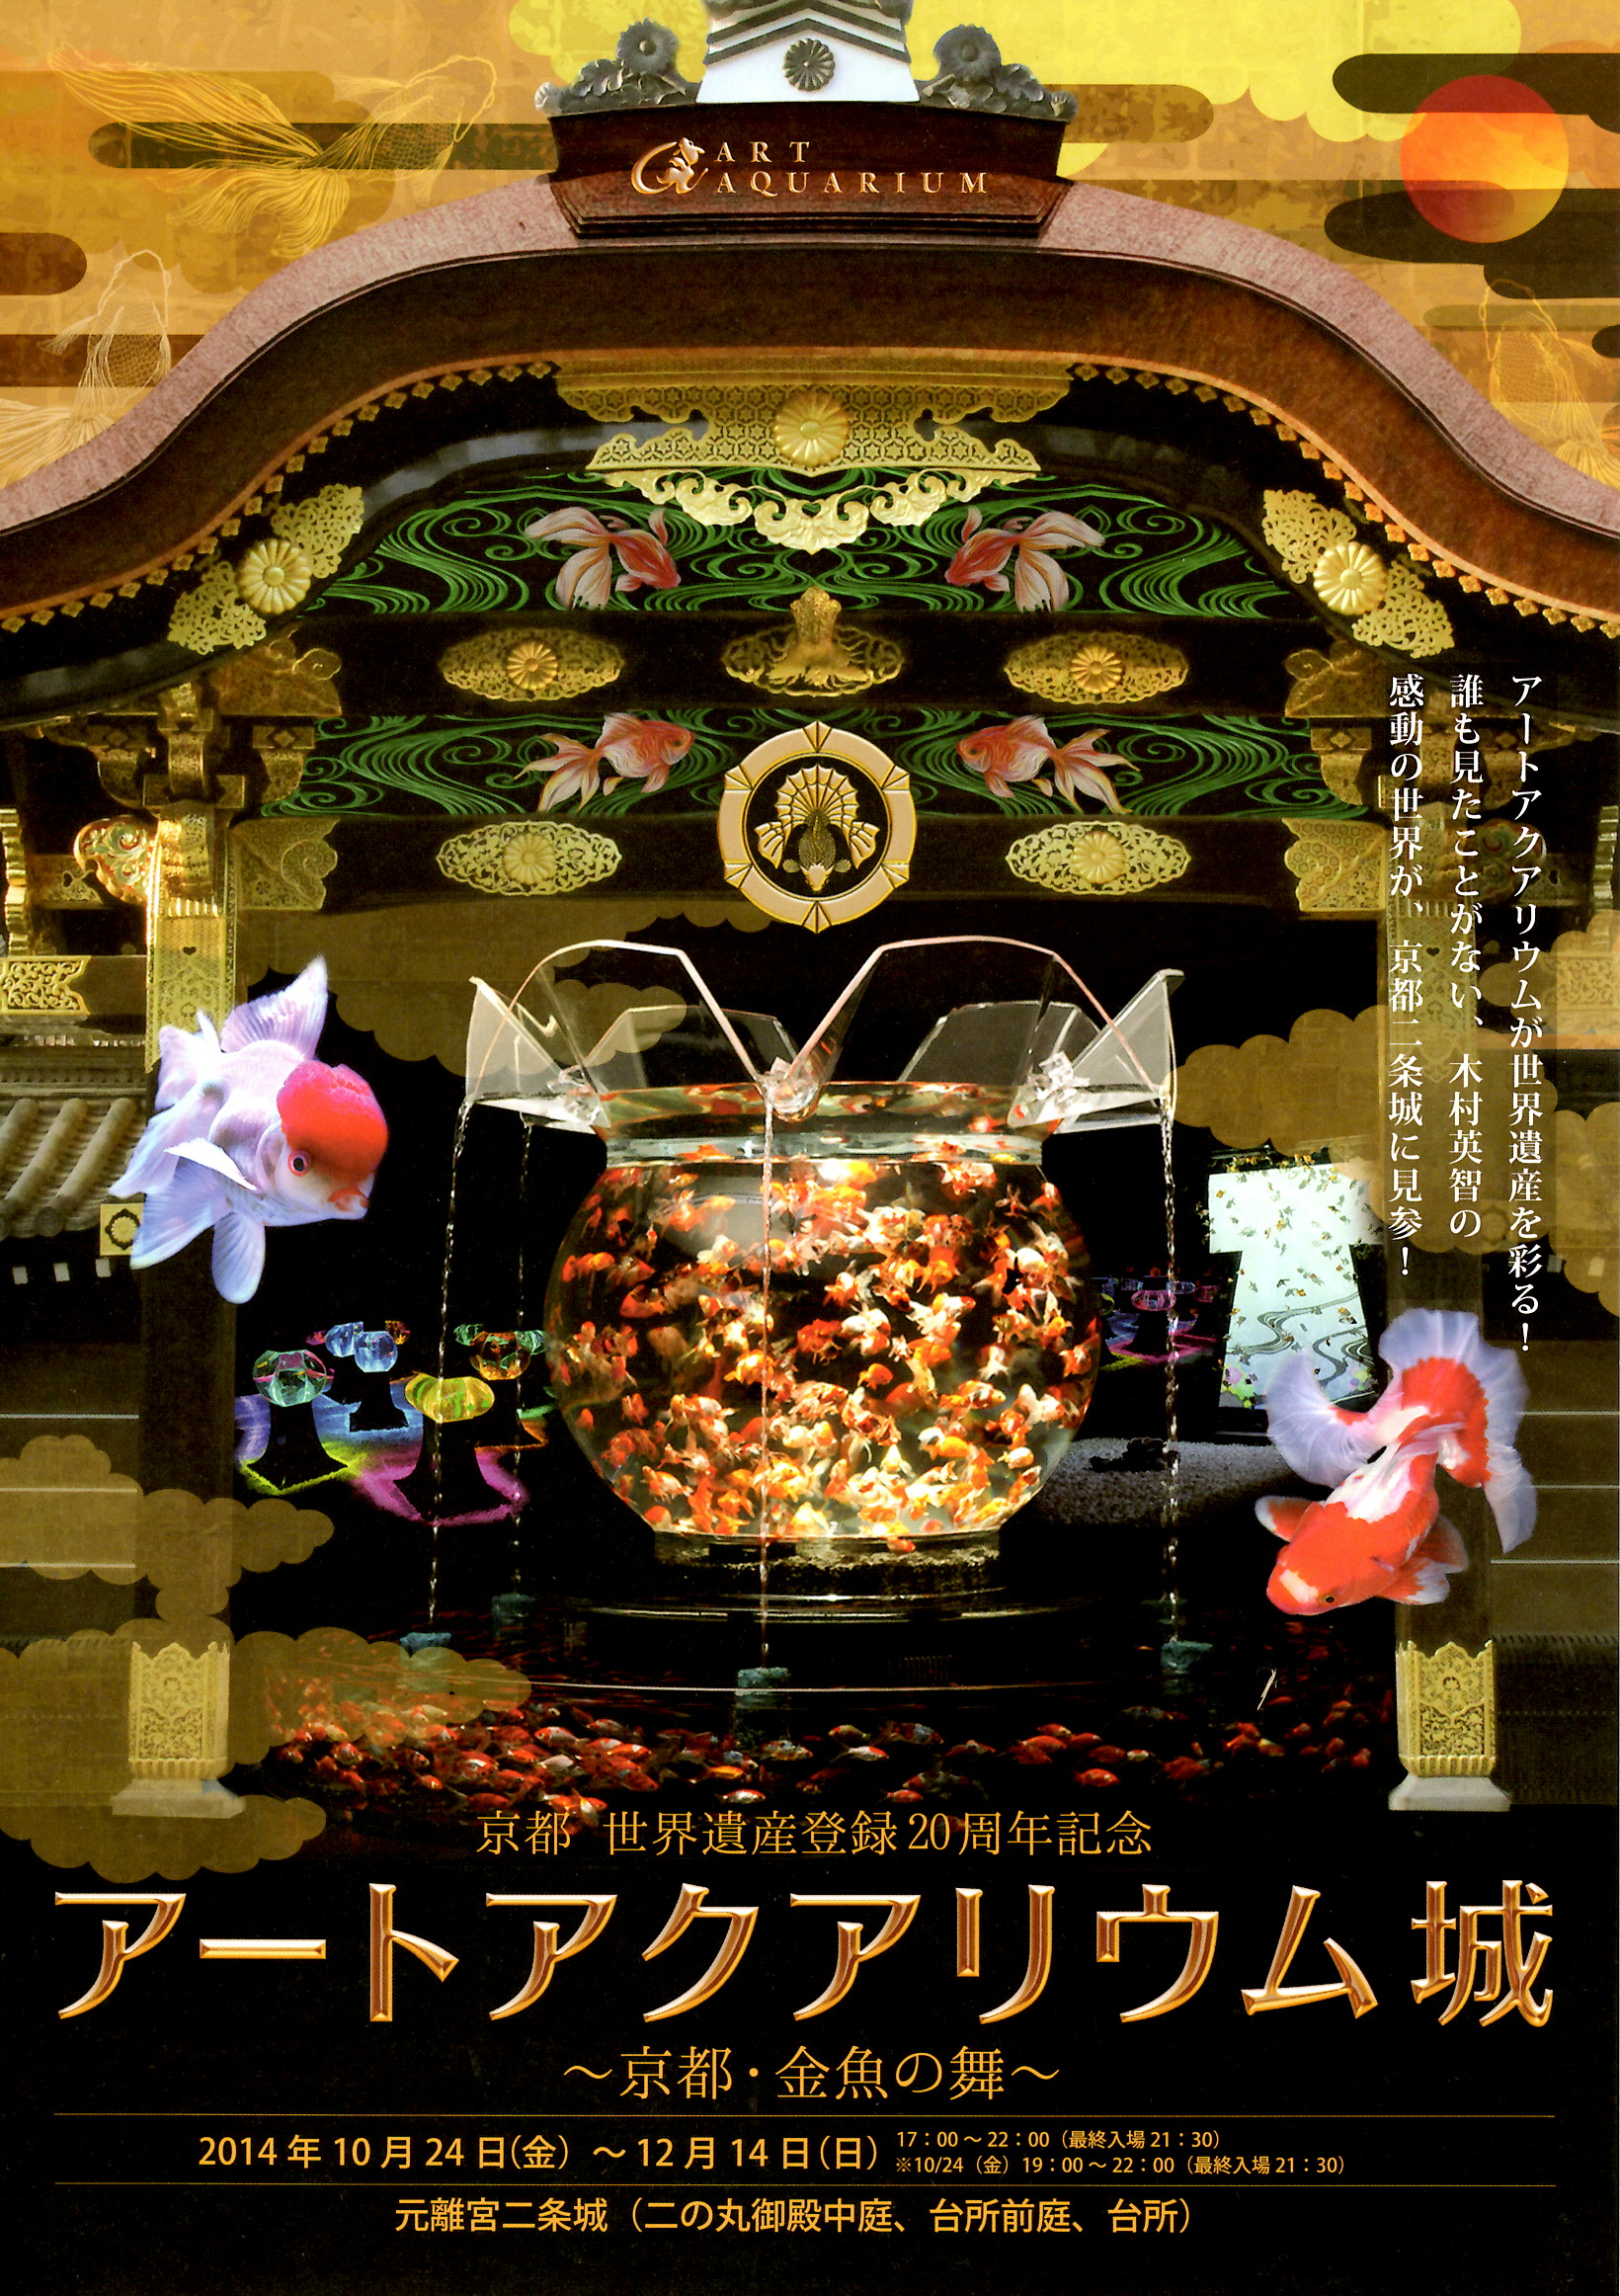 京都 世界遺産登録周年記念やってます 二条城 14年10月30日 京都のお香は老舗の林龍昇堂